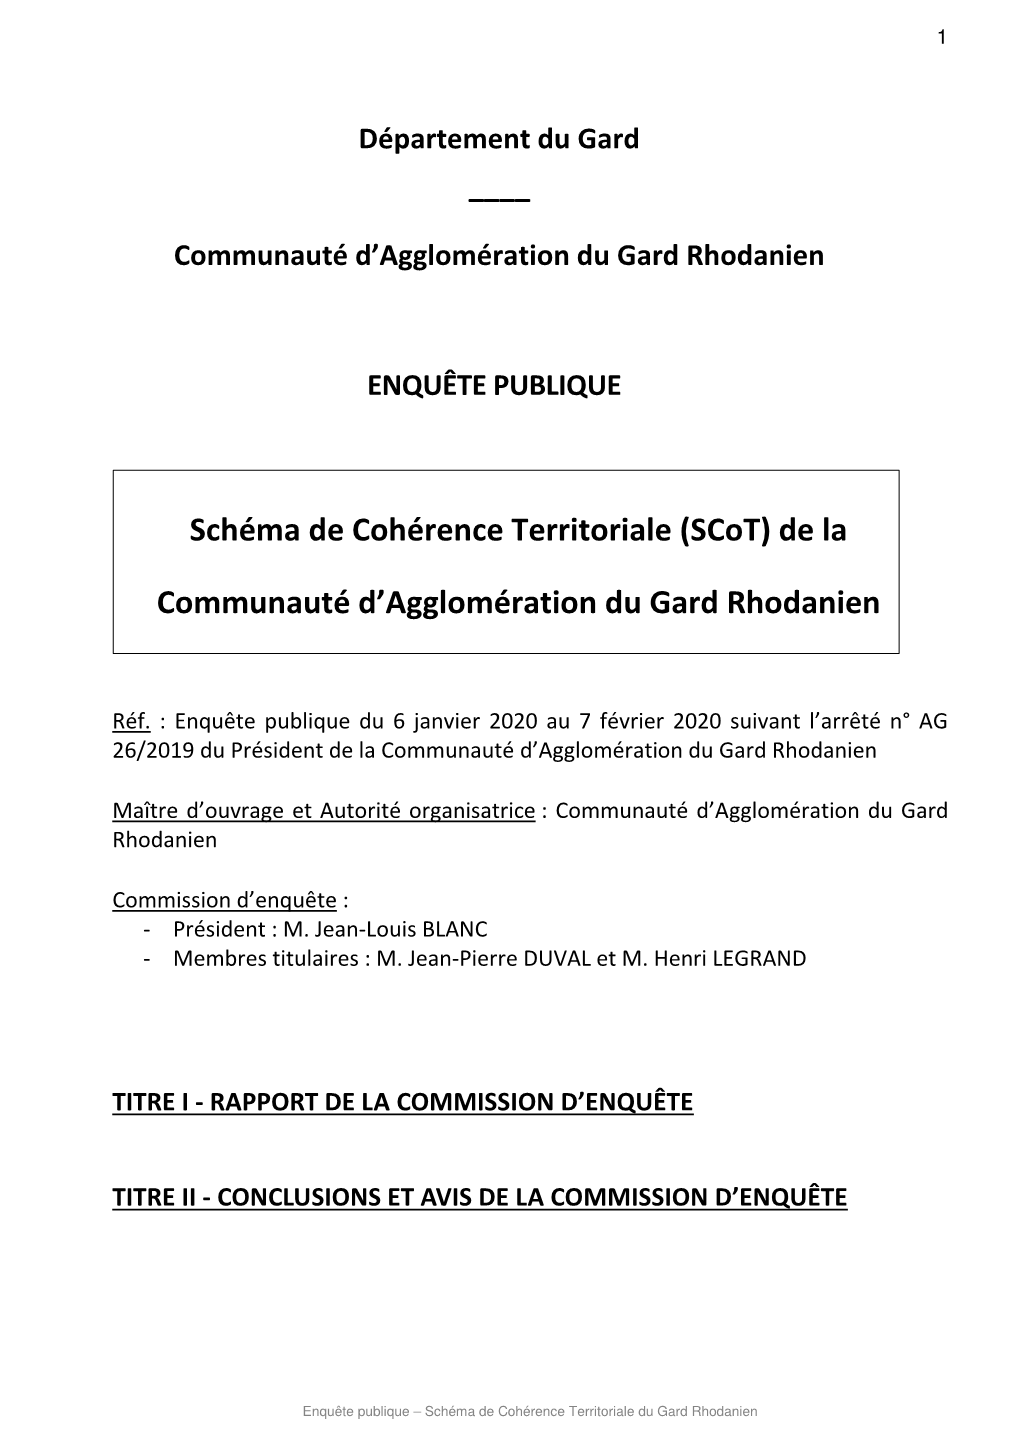 (Scot) De La Communauté D'agglomération Du Gard Rhodanien